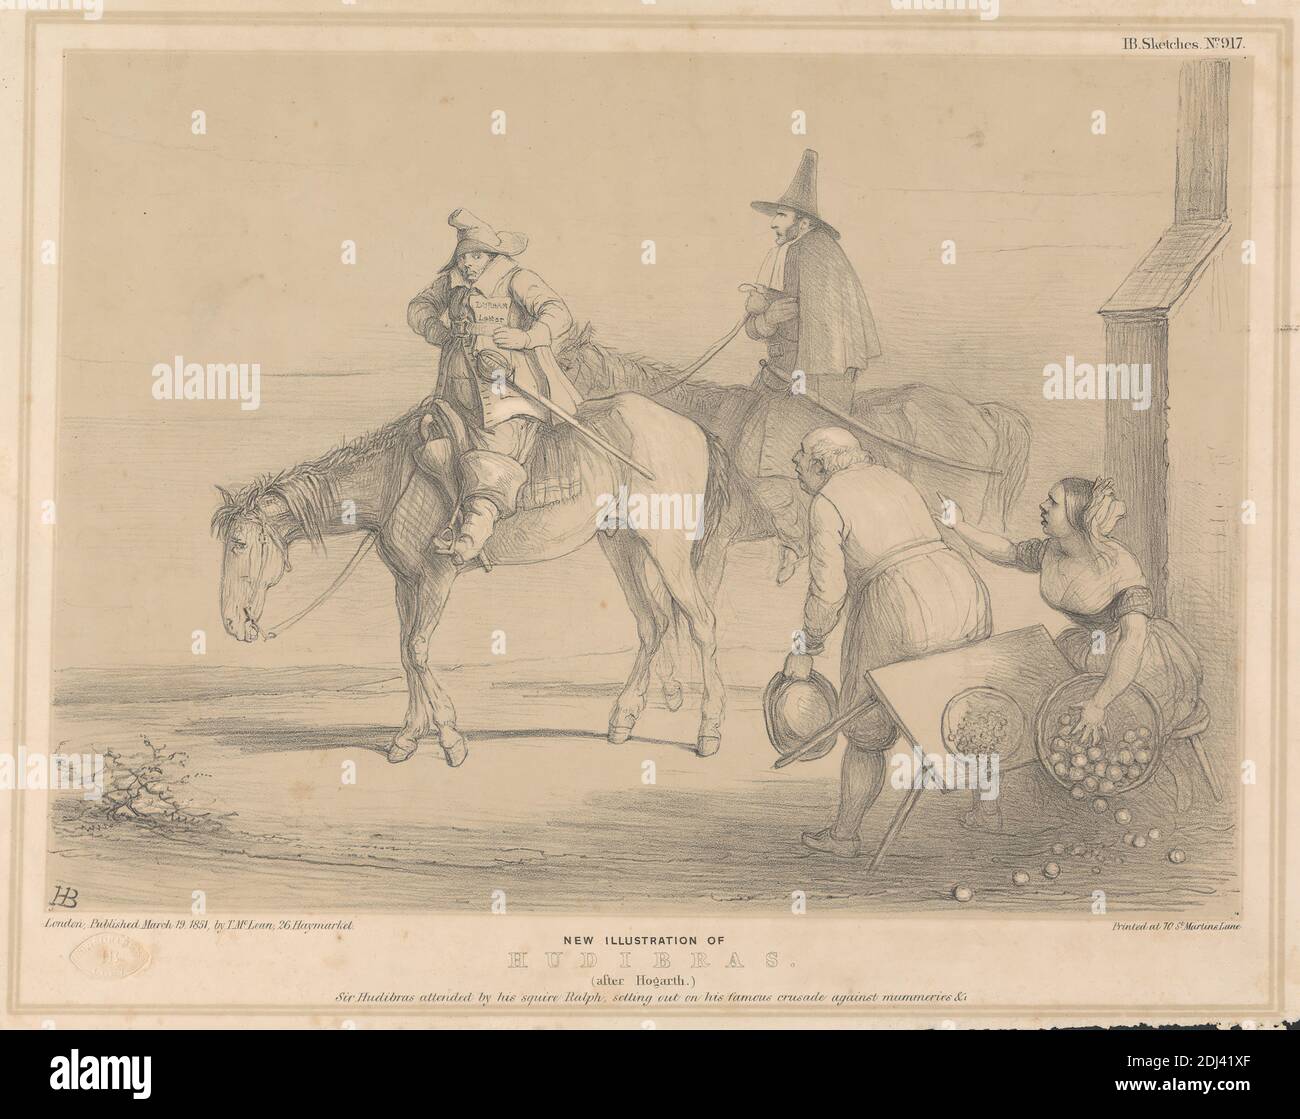 Nouvelle illustration de Hudibras, imprimé par John Doyle ('H.B.'), 1797–1868, irlandais, 1851, lithographie à l'encre marron et noire sur papier à feuilles de bois beige légèrement épais, lisse, feuille: 11 3/4 x 17 1/4 pouces (29.8 x 43.8 cm) et image: 9 11/16 x 13 5/16 pouces (24.6 x 33.8 cm), bottes, corbeing, capes, crash, croisades, chute, genre sujet, chapeaux, chevaux (animaux), Hudibras (poème, 1663) de Samuel Butler (1613-1680), humour, illustration, lettre (correspondance), hommes, obèses, parodie, paysans, politiques, politiciens, équitation, satire, table, mots satires, femme, squires, femme, croquis, squiricaux, femme Banque D'Images